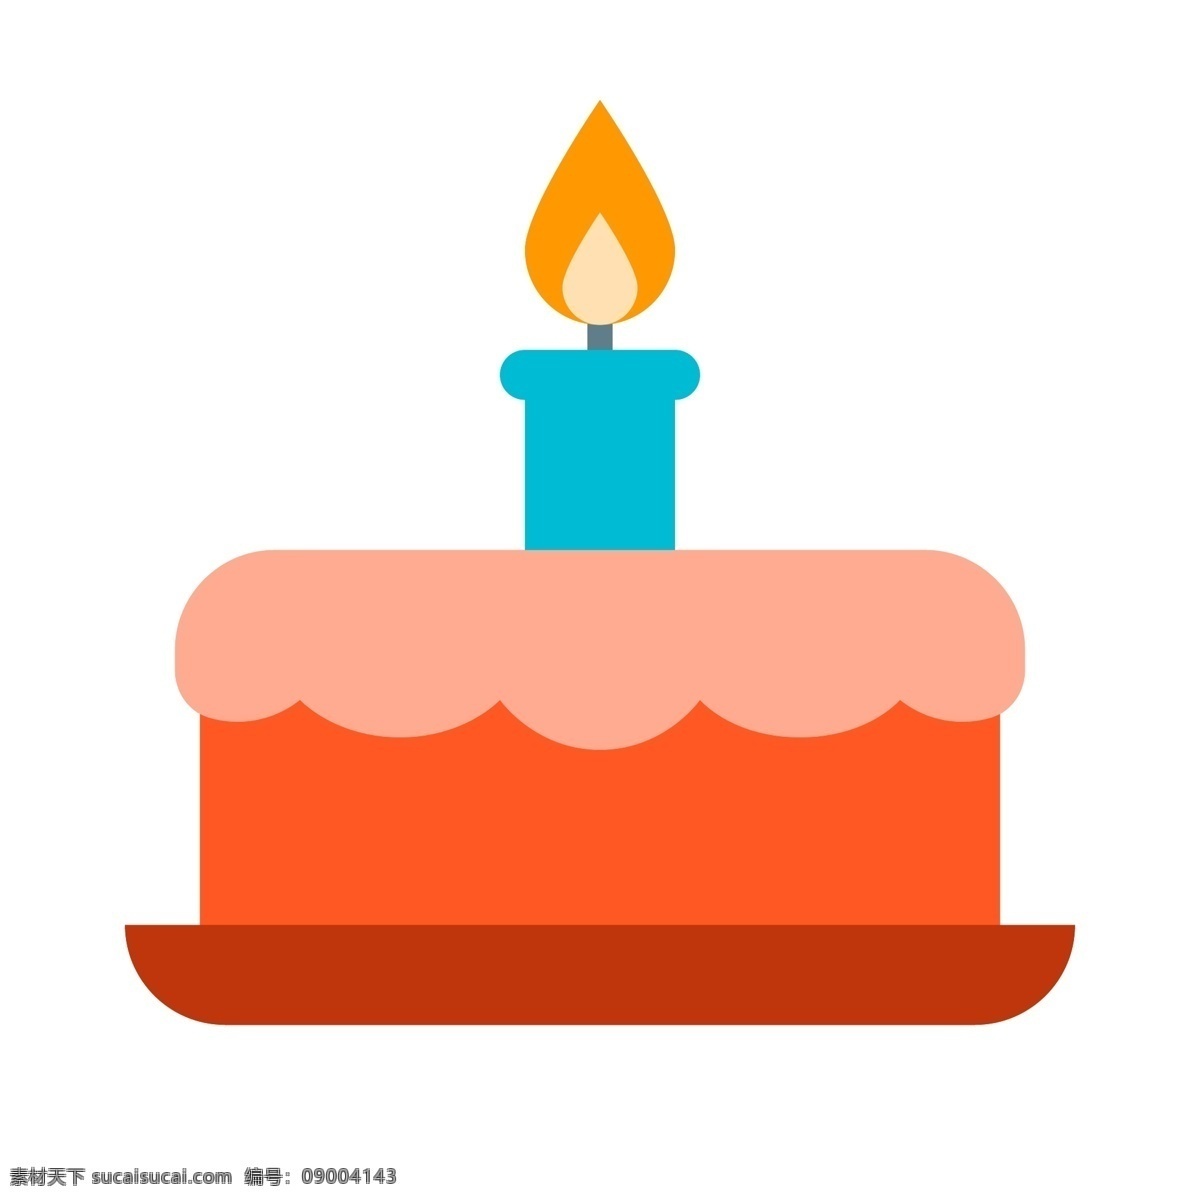 卡通生日蛋糕 卡通蛋糕 卡通甜点 卡通生日 生日蜡烛 生日 生活百科 餐饮美食